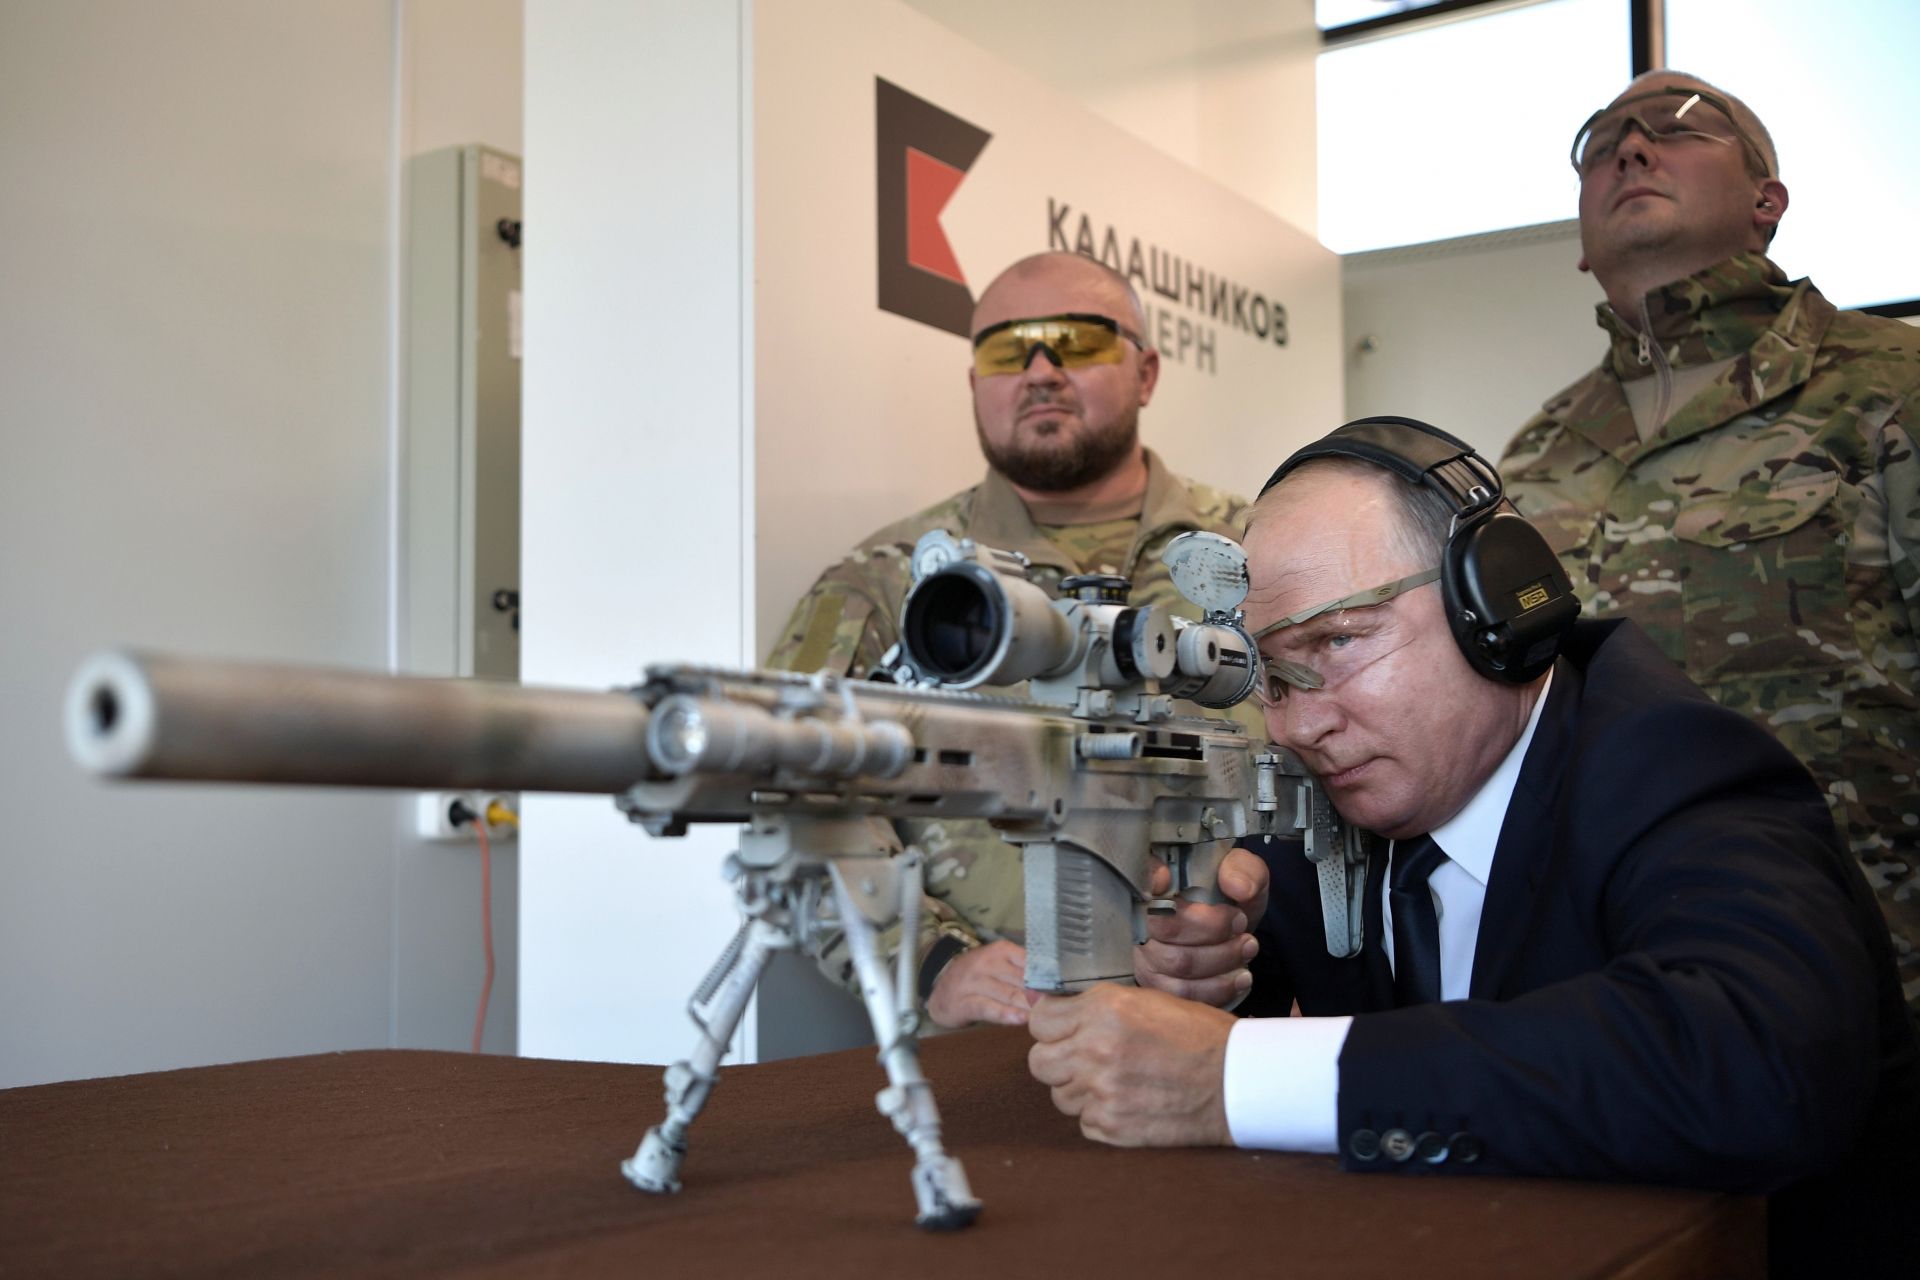 Владимир Путин разгледа днес галерията за снайперистка стрелба в стрелковия полигон на концерна "Калашников"